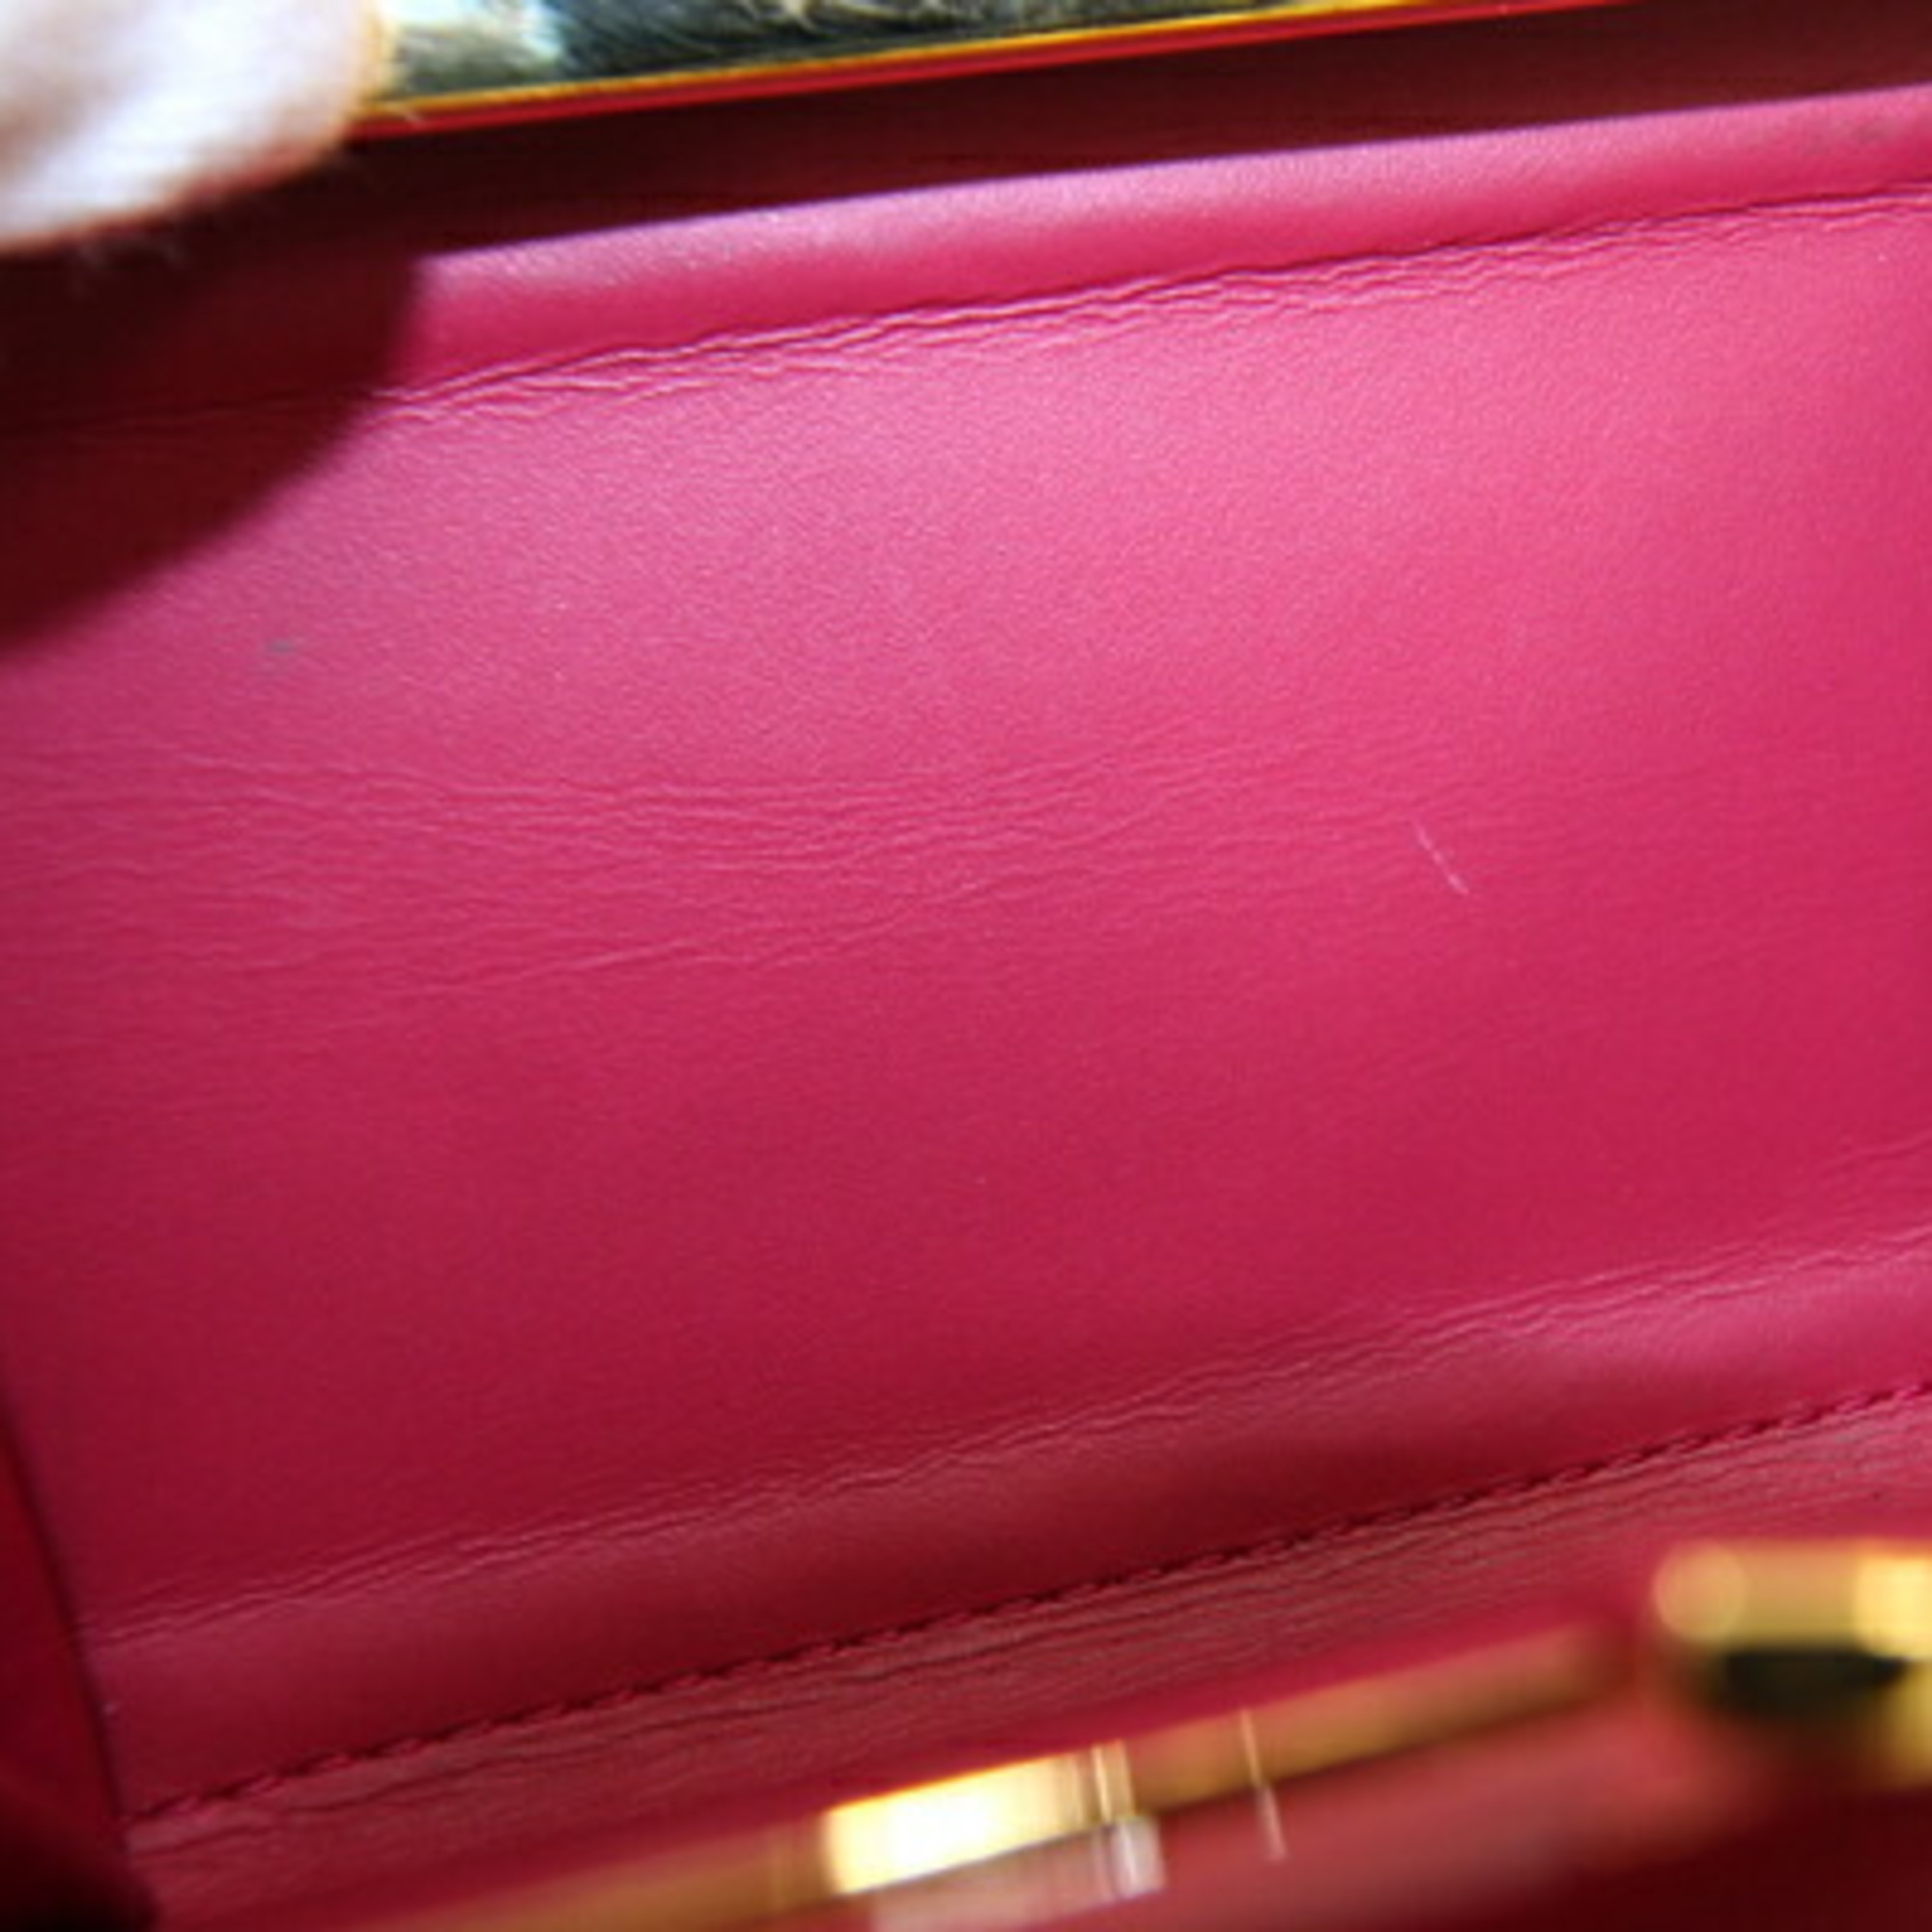 Louis Vuitton Bifold Wallet Vernis Porte Feuille Viennois M91768 Rose Andien Compact Ladies LOUIS VUITTON